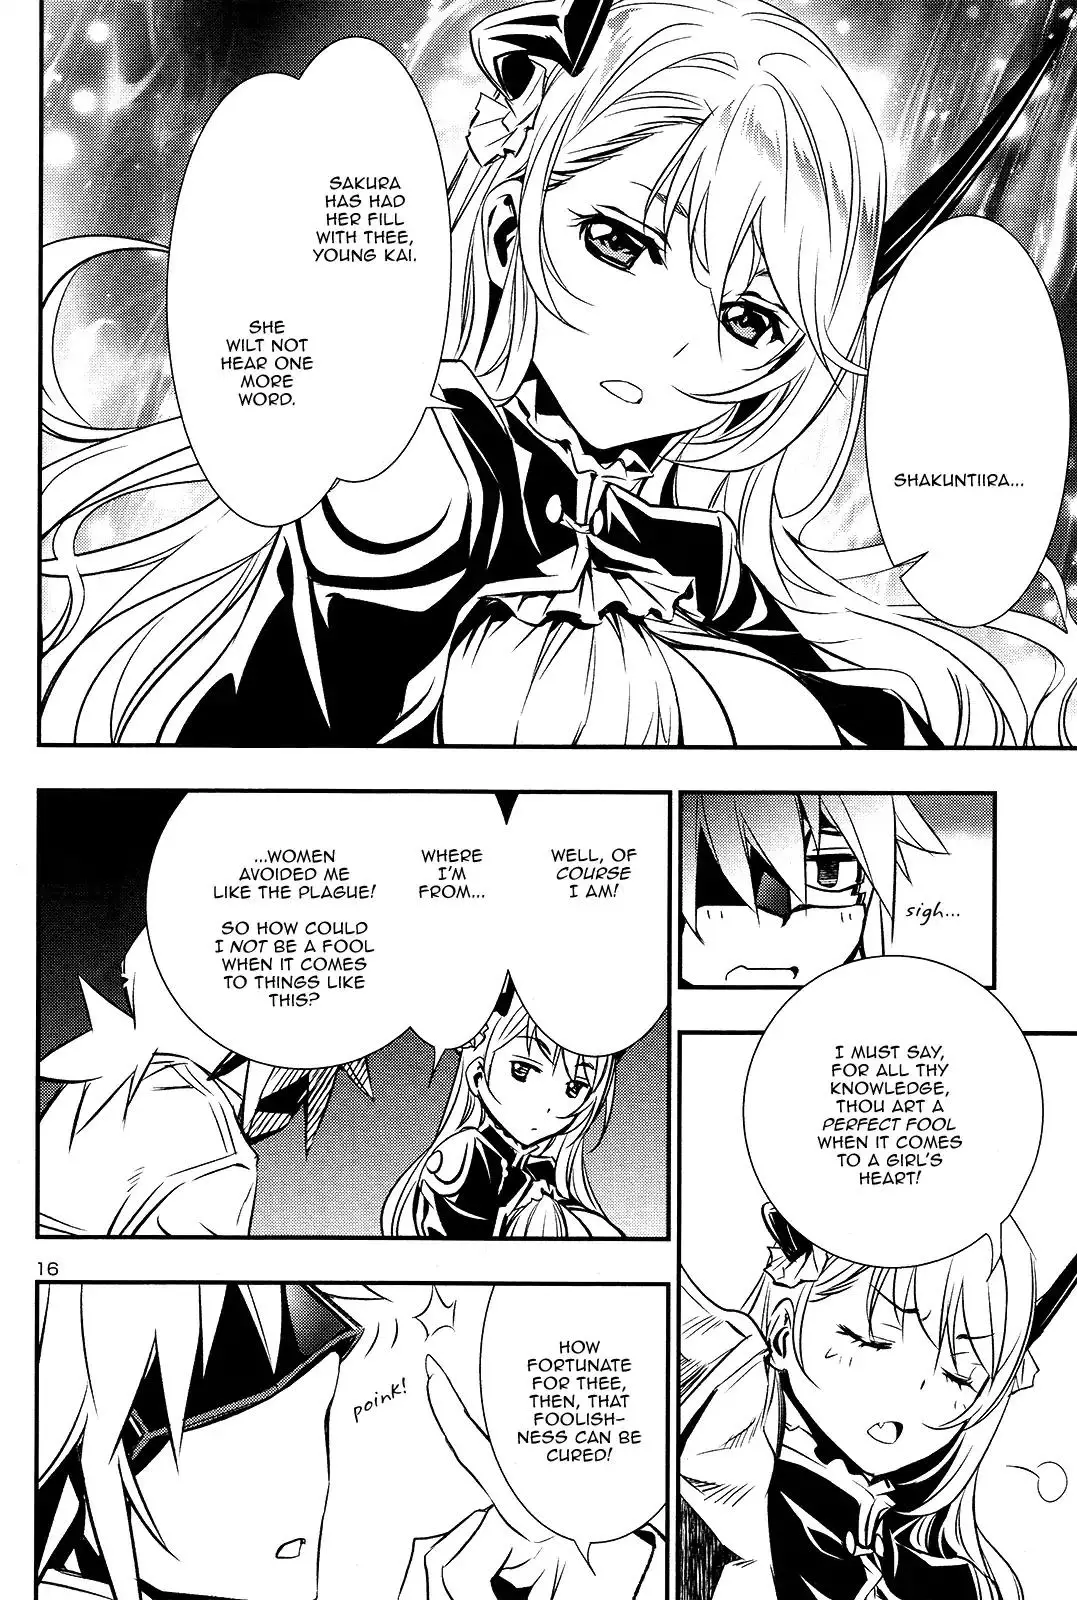 Shinju no Nectar - 11 page 14